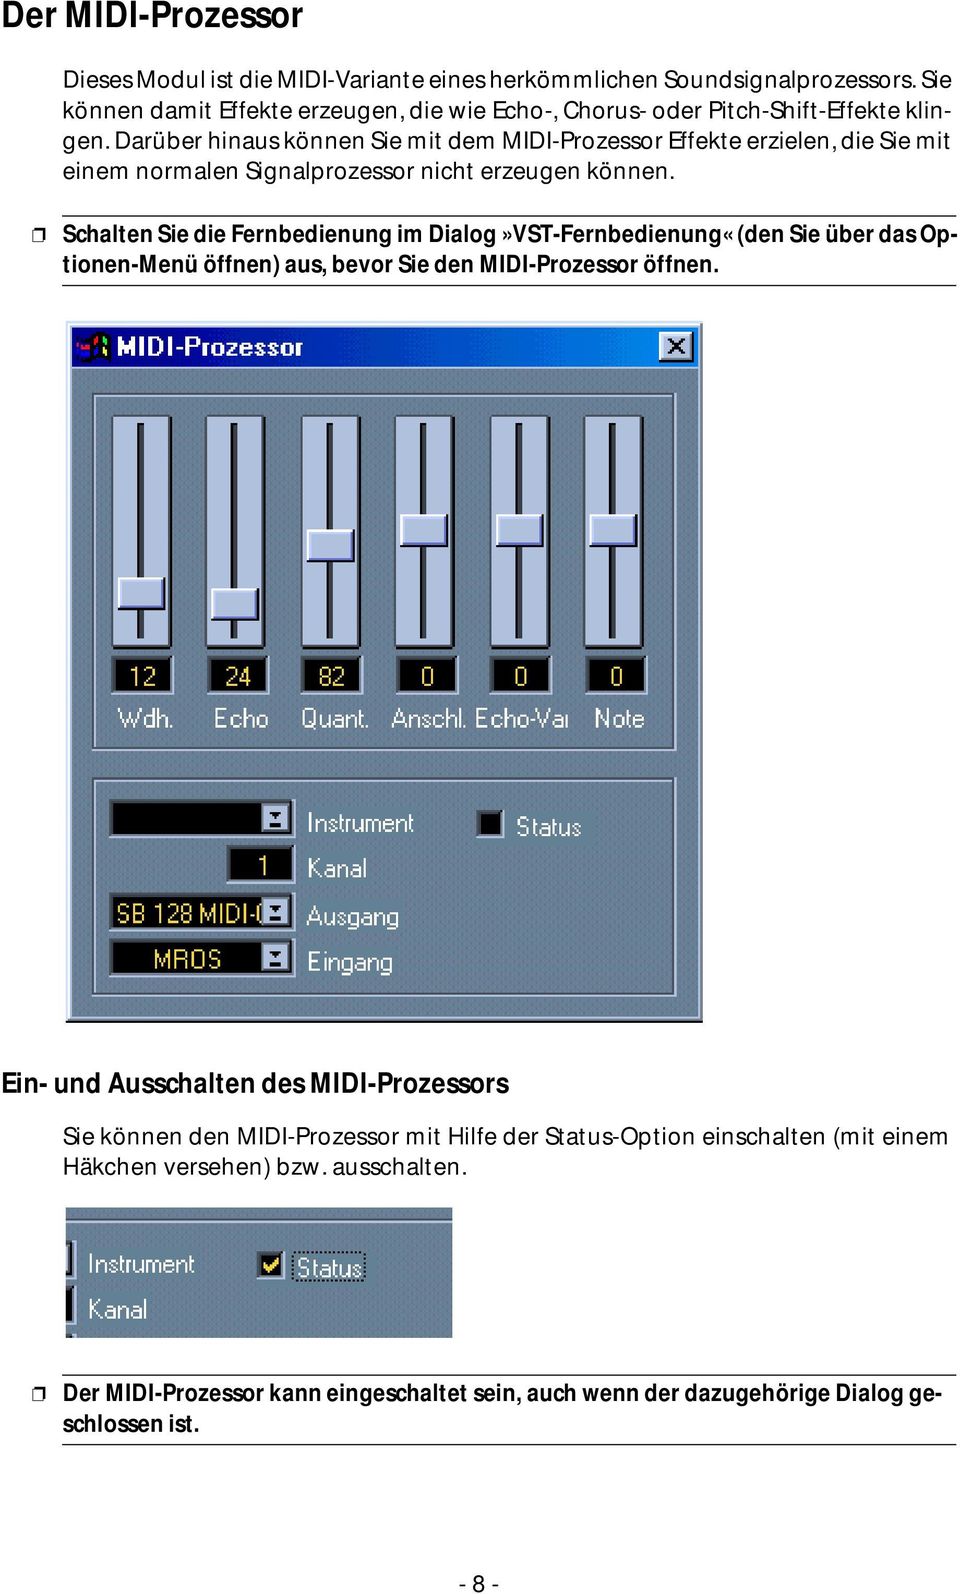 Darüber hinaus können Sie mit dem MIDI-Prozessor Effekte erzielen, die Sie mit einem normalen Signalprozessor nicht erzeugen können.